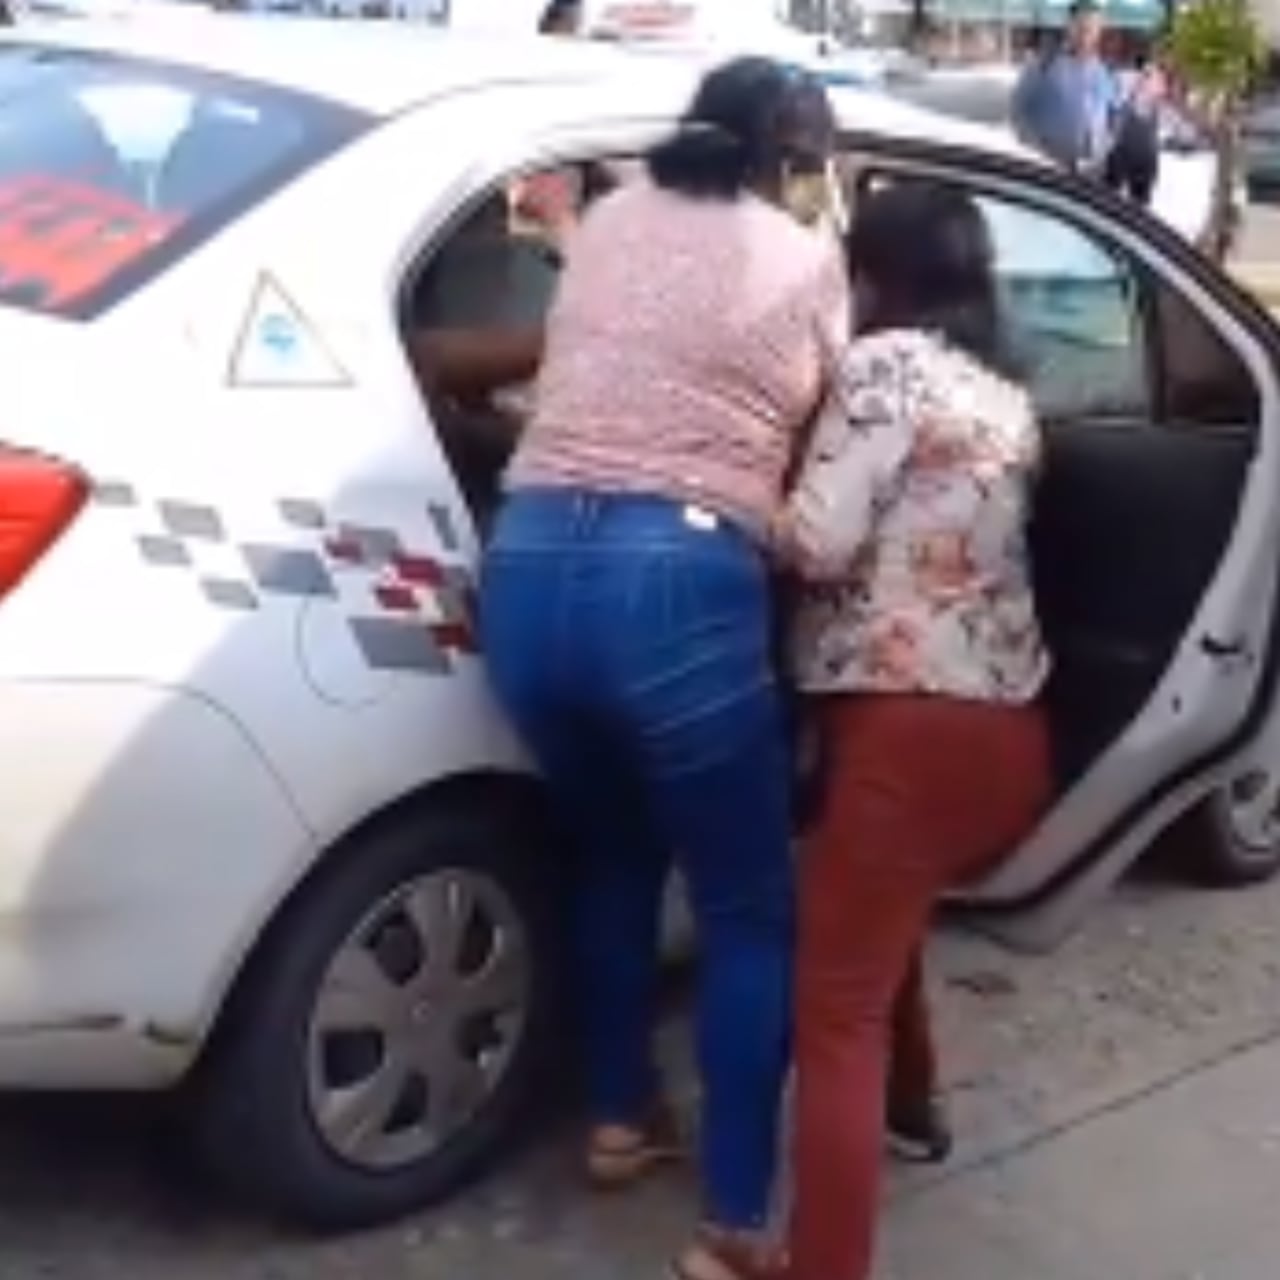 La mujer intentó sacar a la fuerza al hombre y su acompañante del taxi.